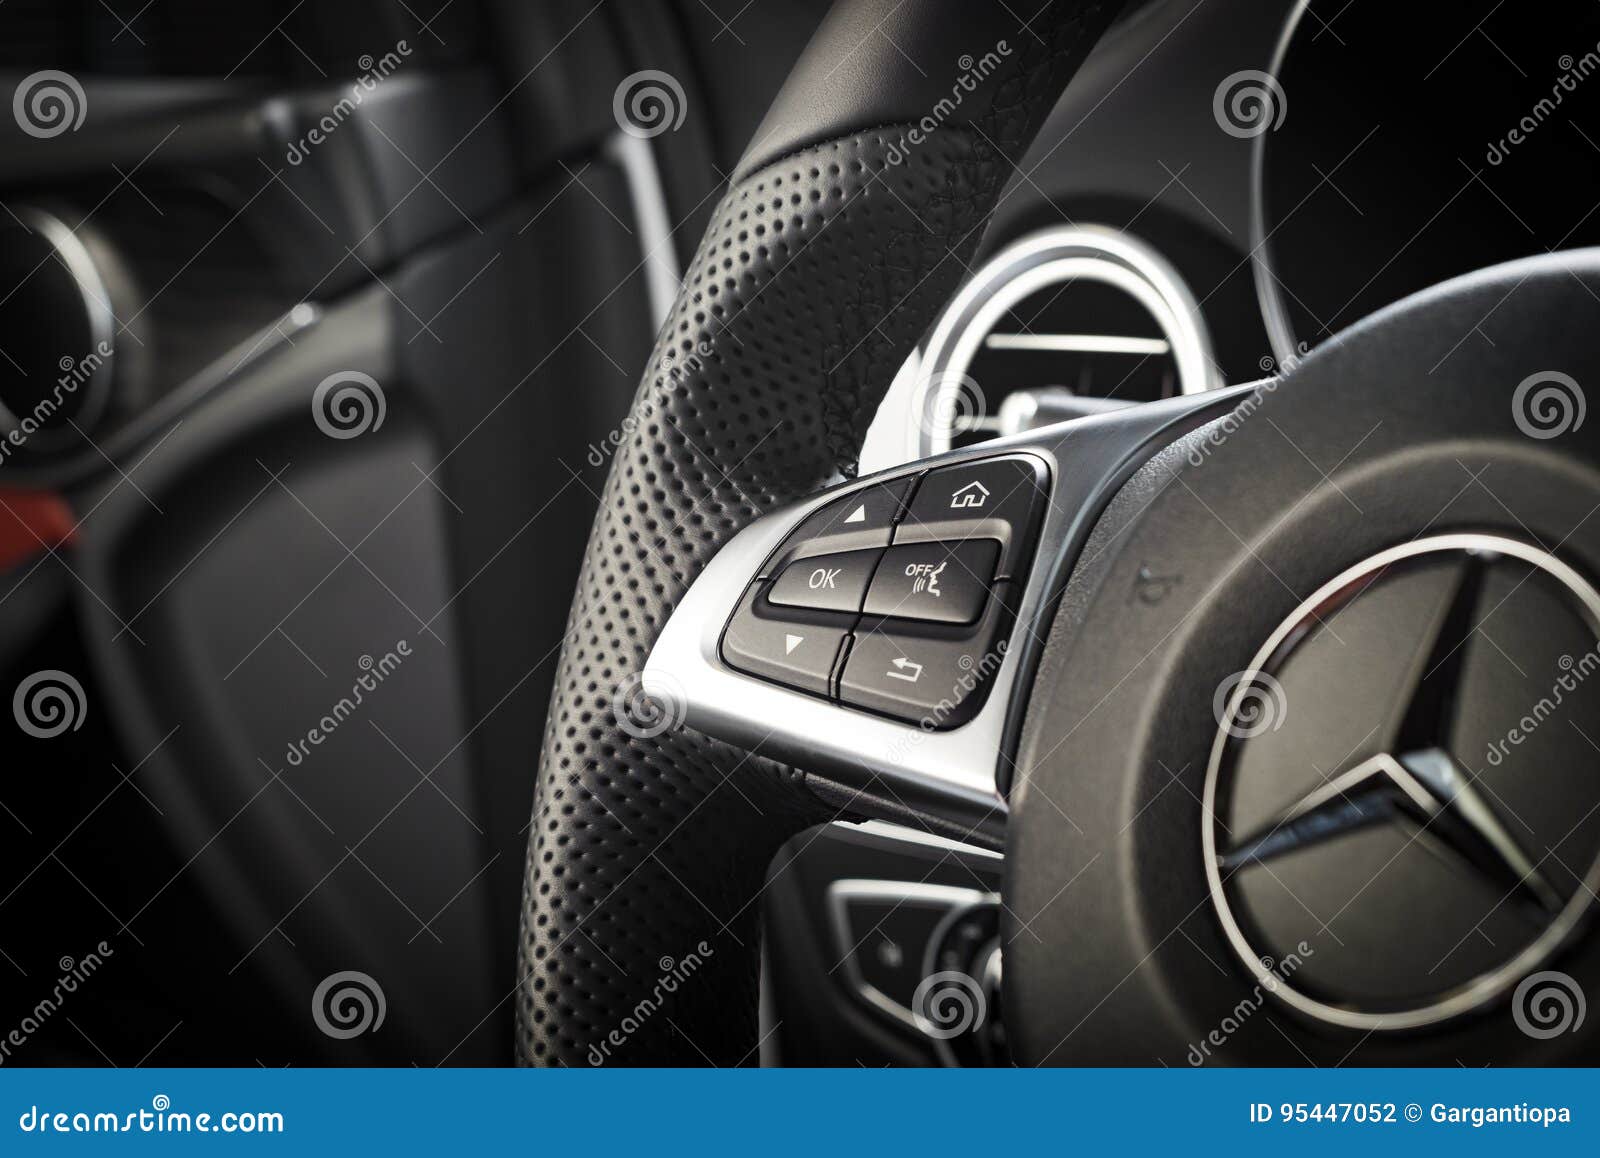 Mercedes Benz Cla 45 2016 Amg Interior Editorial Photography